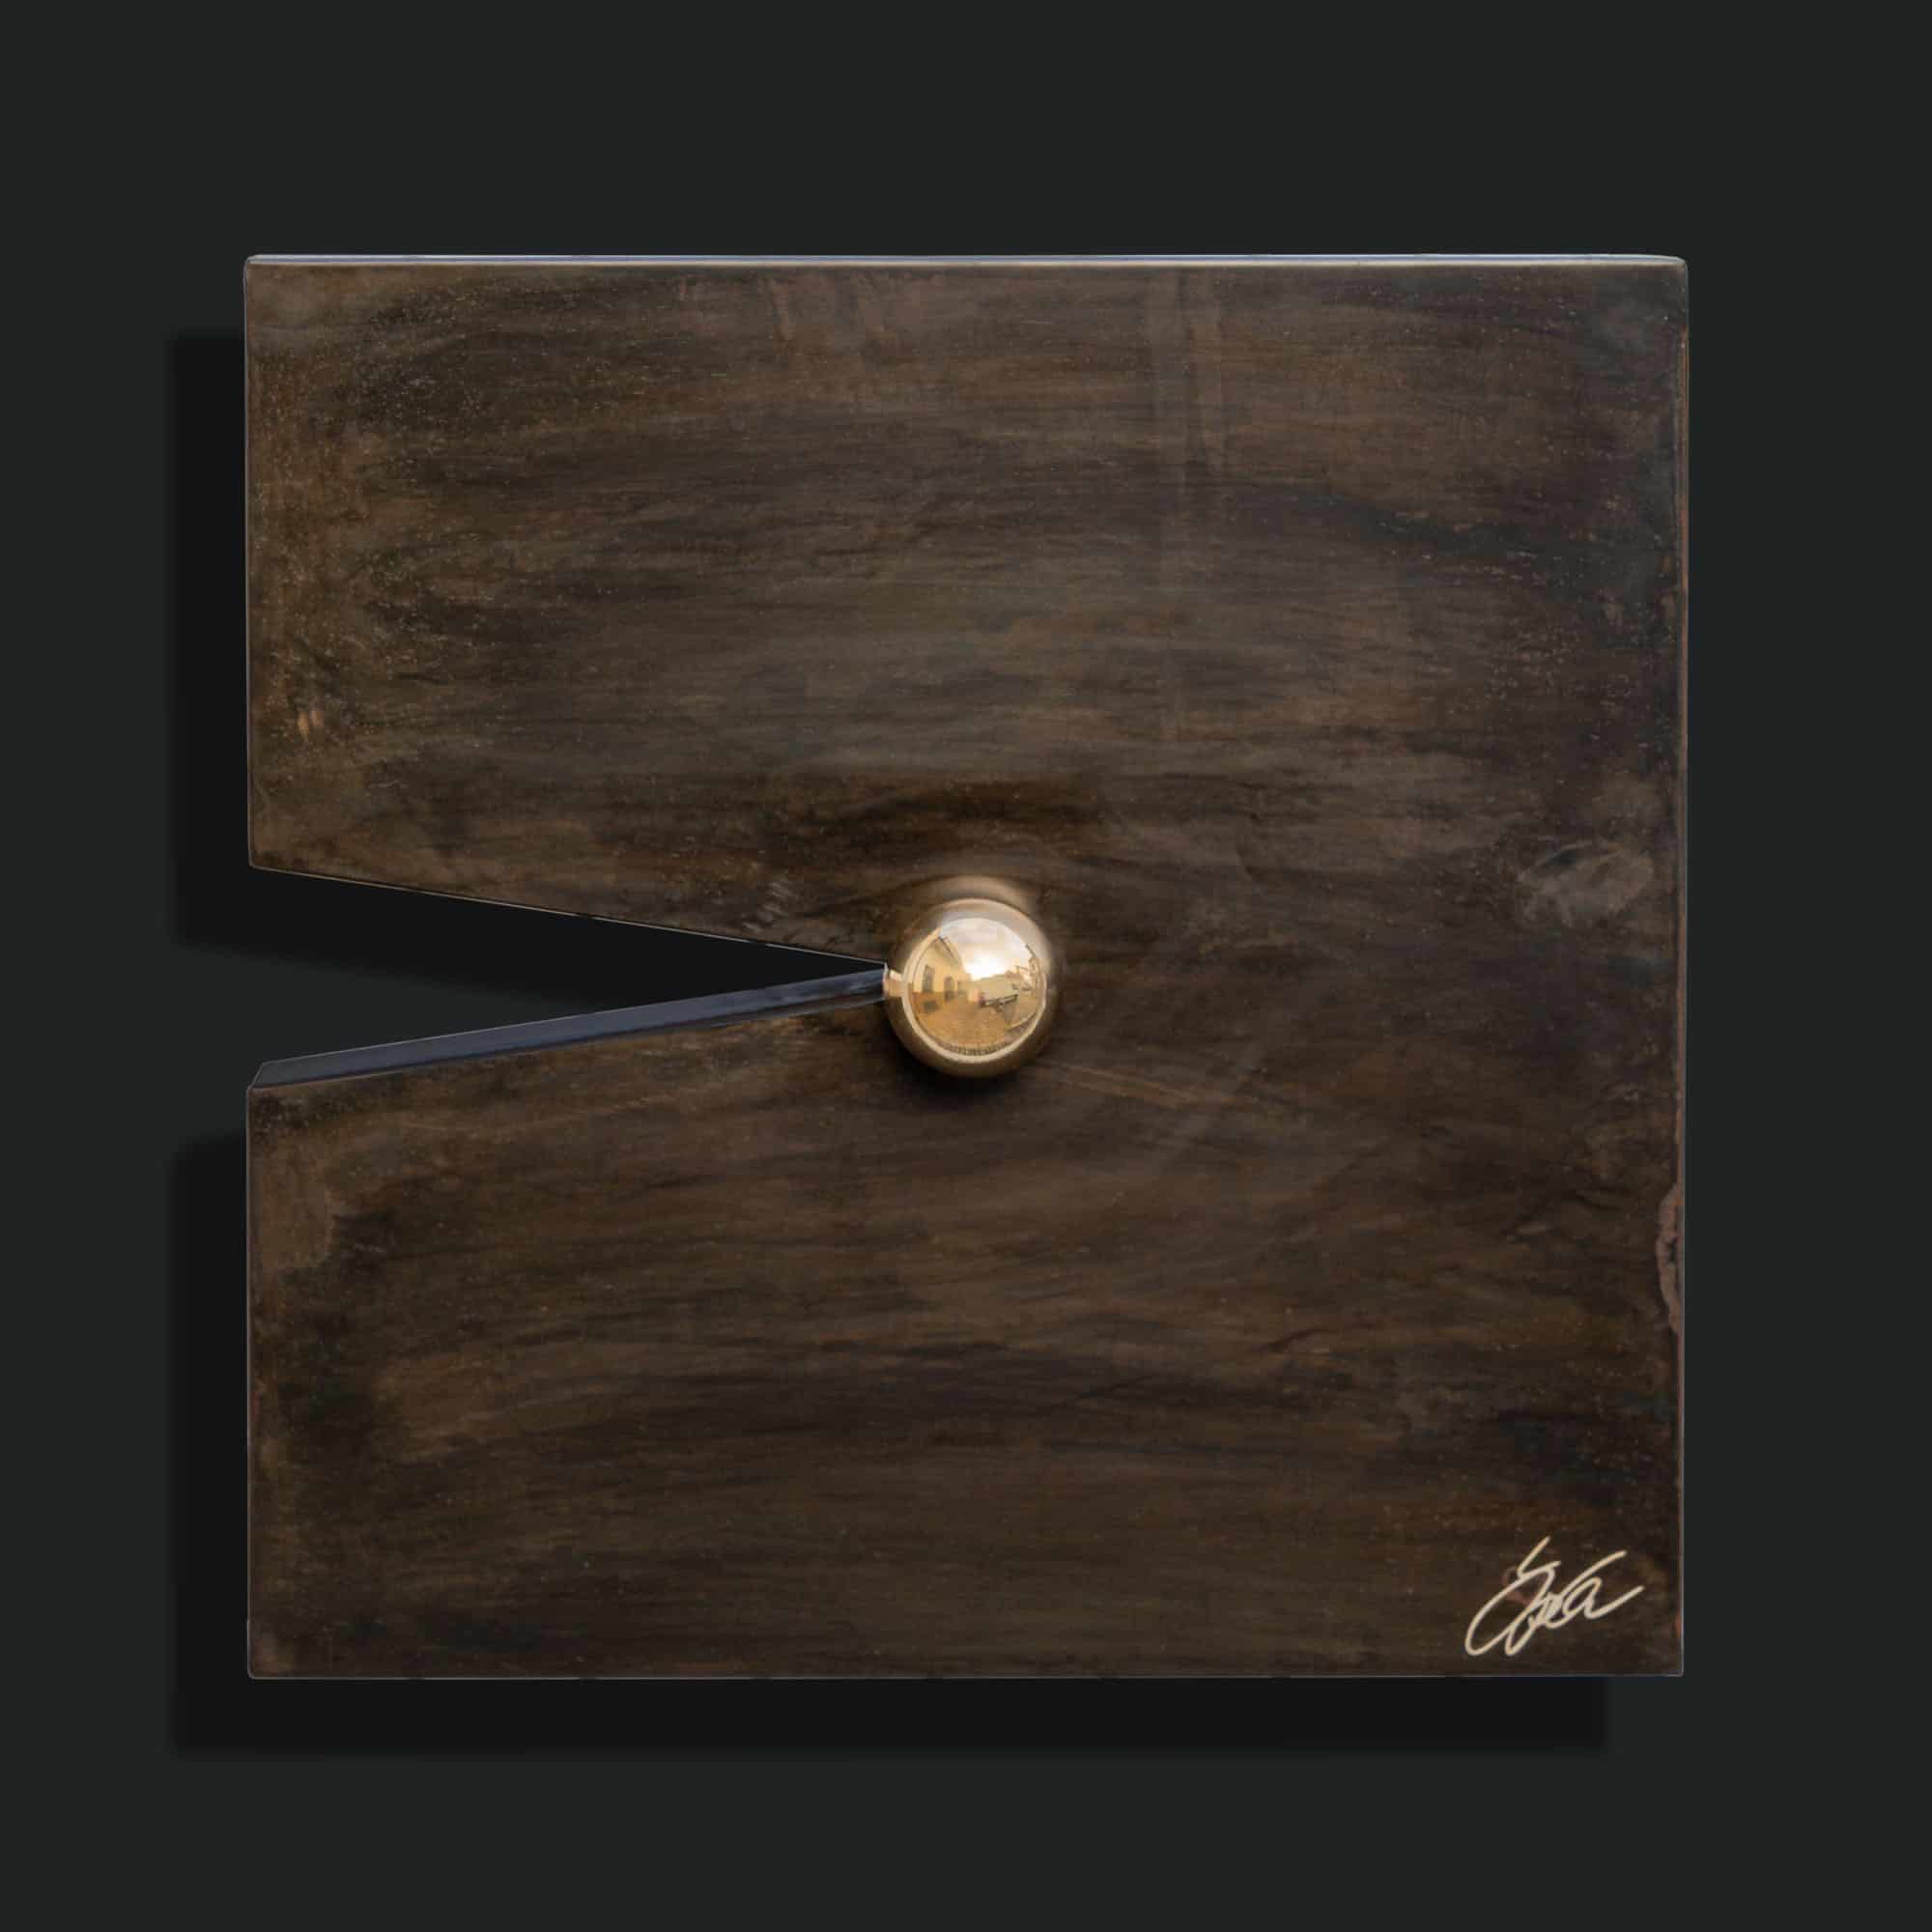 „on point 40“ ein Stahlbild von Daniel Springer - Stahlbild aus der Serie „imagination“ mit einer Kugel 4 cm 24 Karat vergoldet, Oberfläche Metall schwarz-braun brüniert